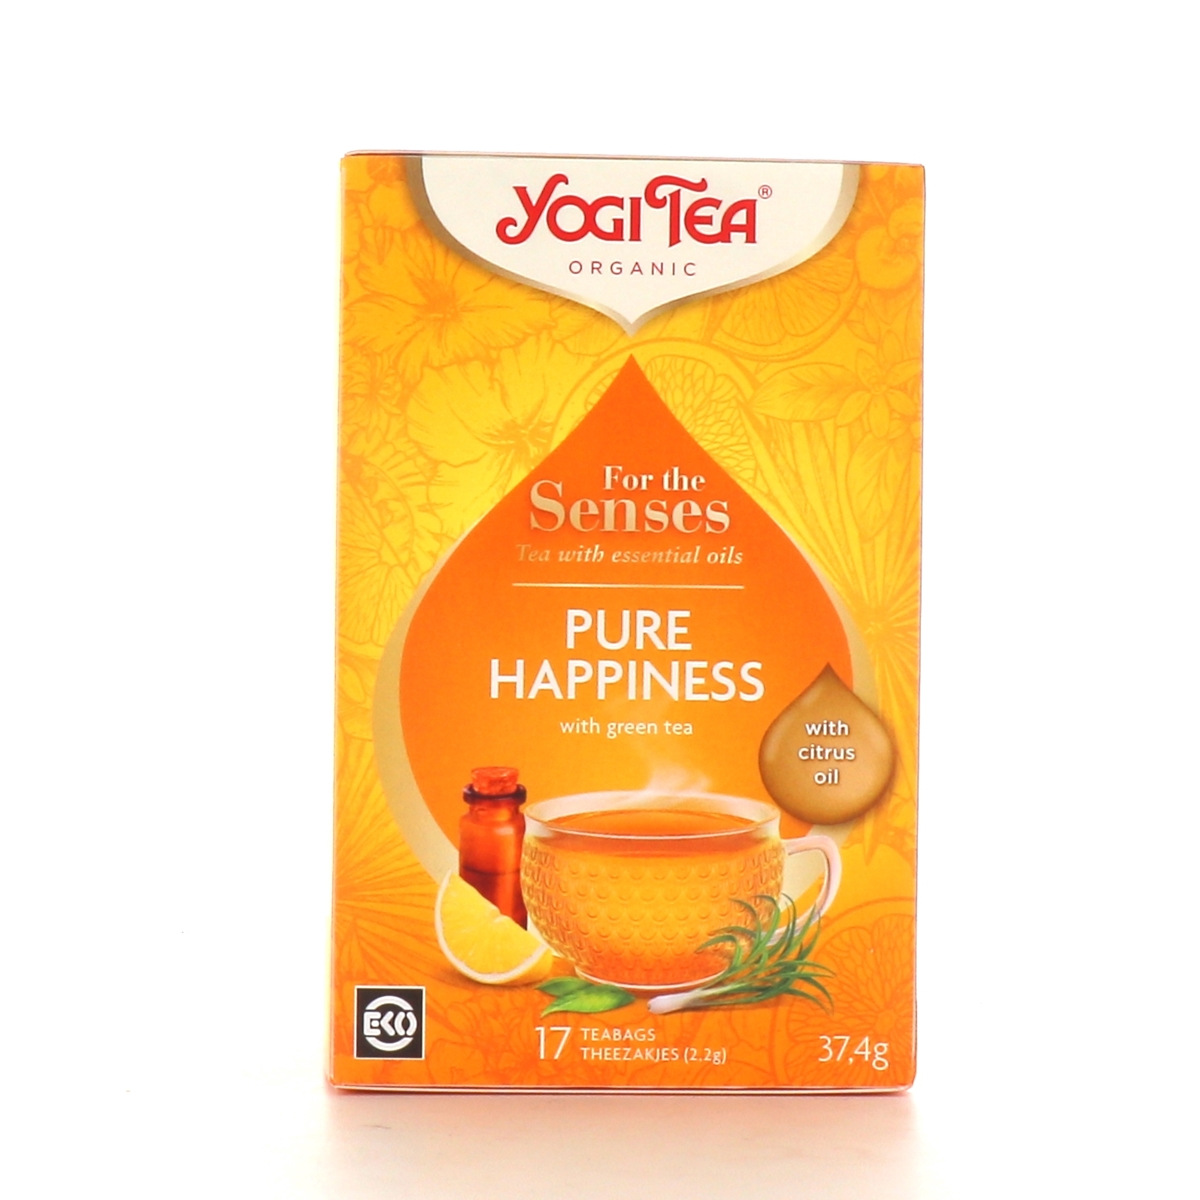 Yogi Tea Profonde Respiration infusion bio 17 sachets